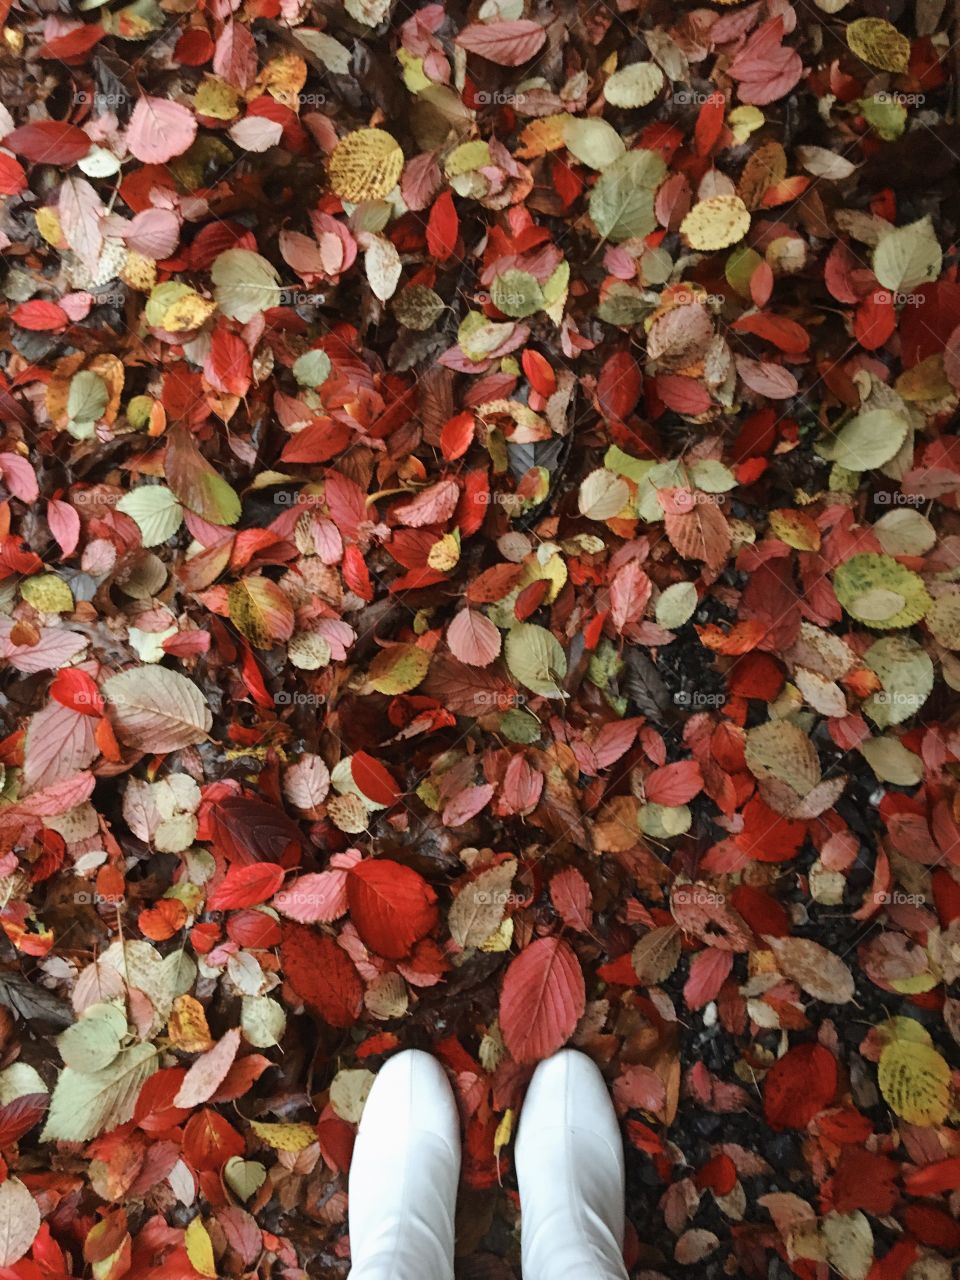 Lovely fall leaves 